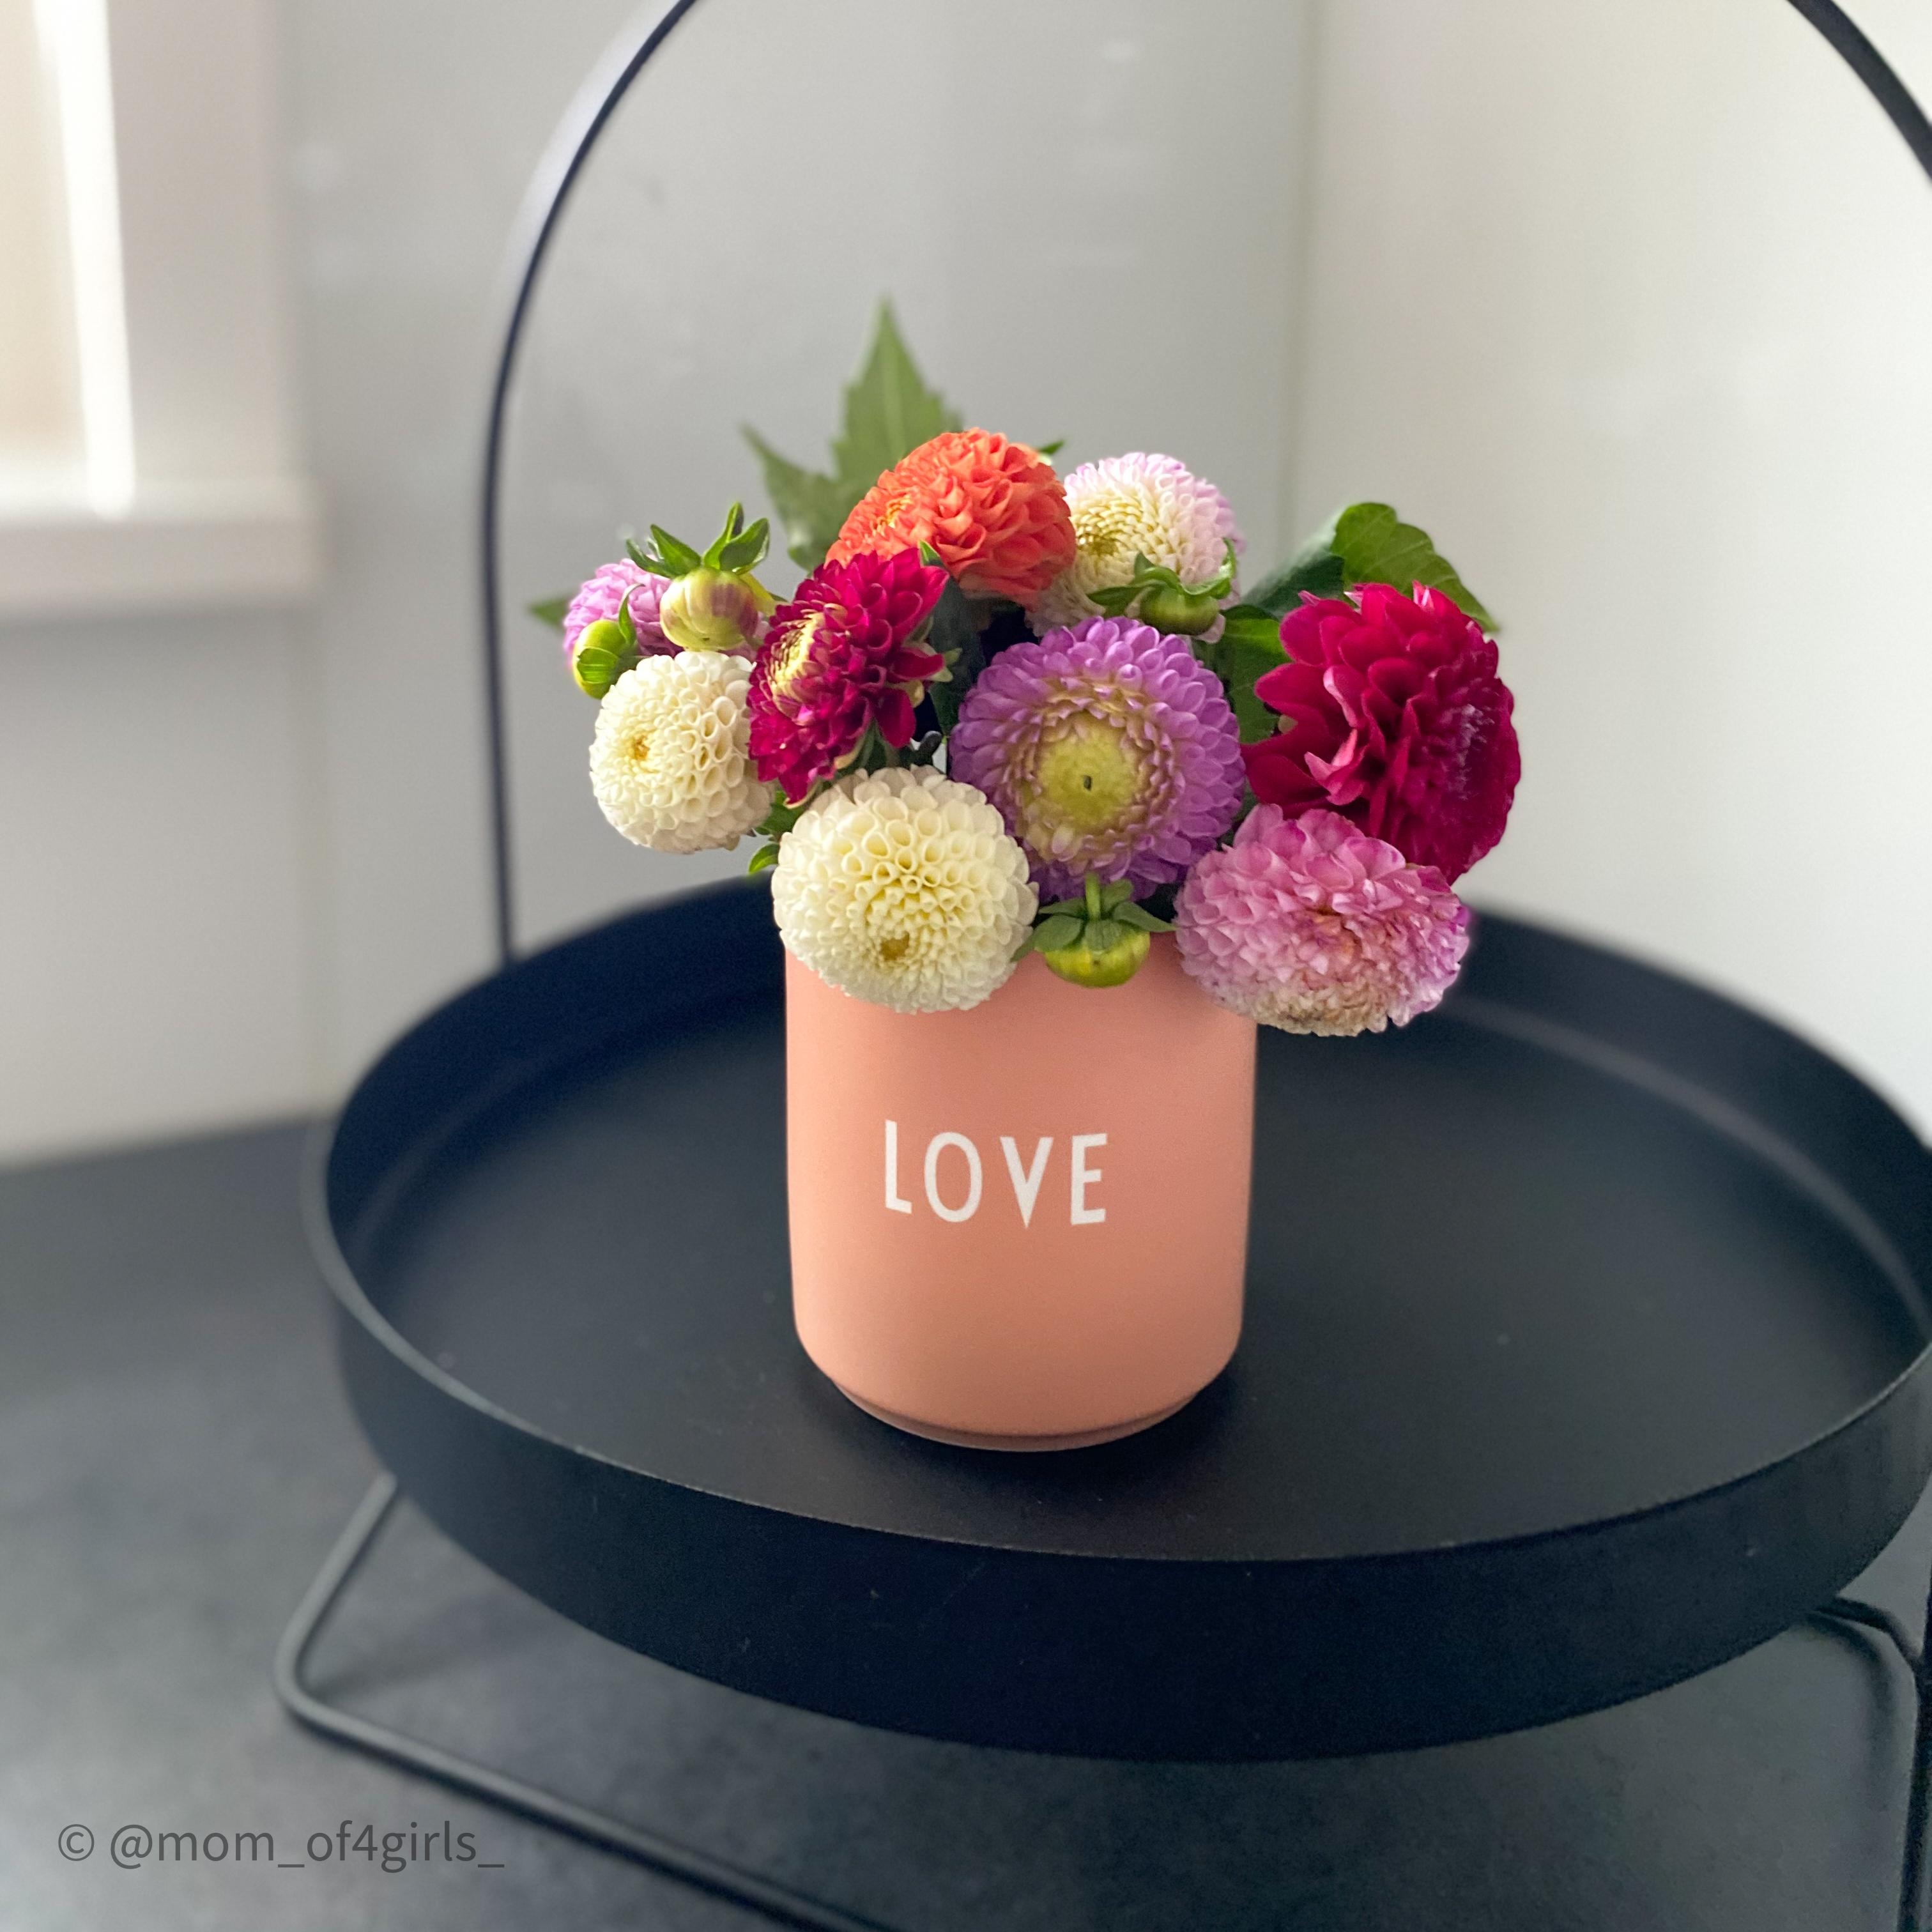 #küche #küchendeko #vase #tablett #kücheninspiration #decoration #freshflowers #flowers #blumenstrauss #blumen